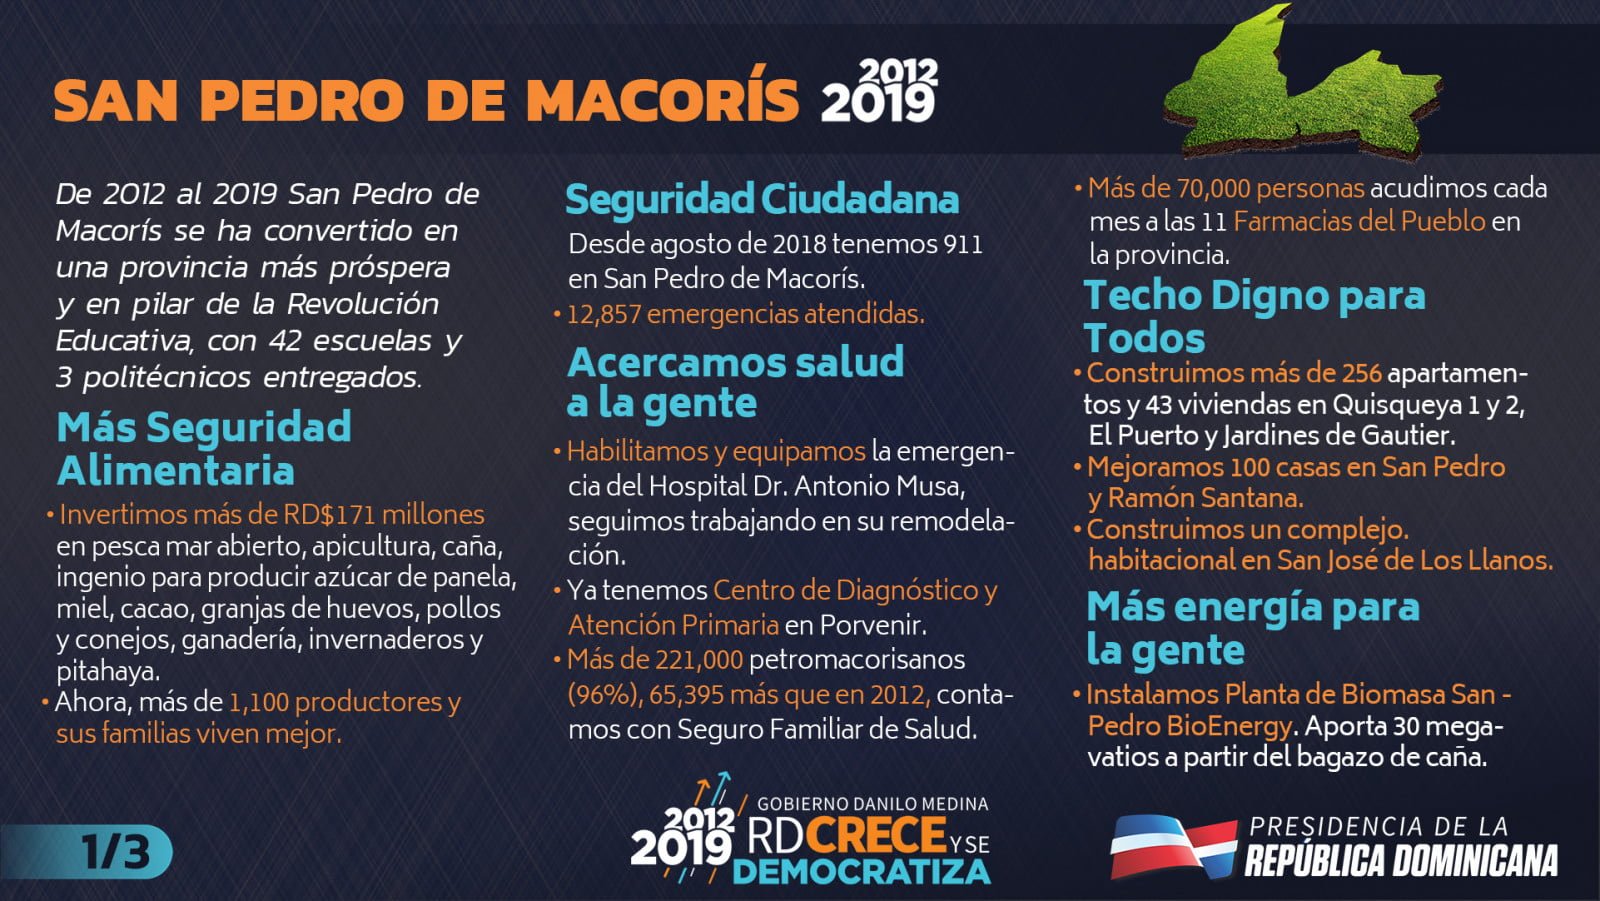 Desde el 2012, San Pedro de Macorís crece y se democratiza: 911, 11 Farmacias del Pueblo y 96% población con seguro de salud